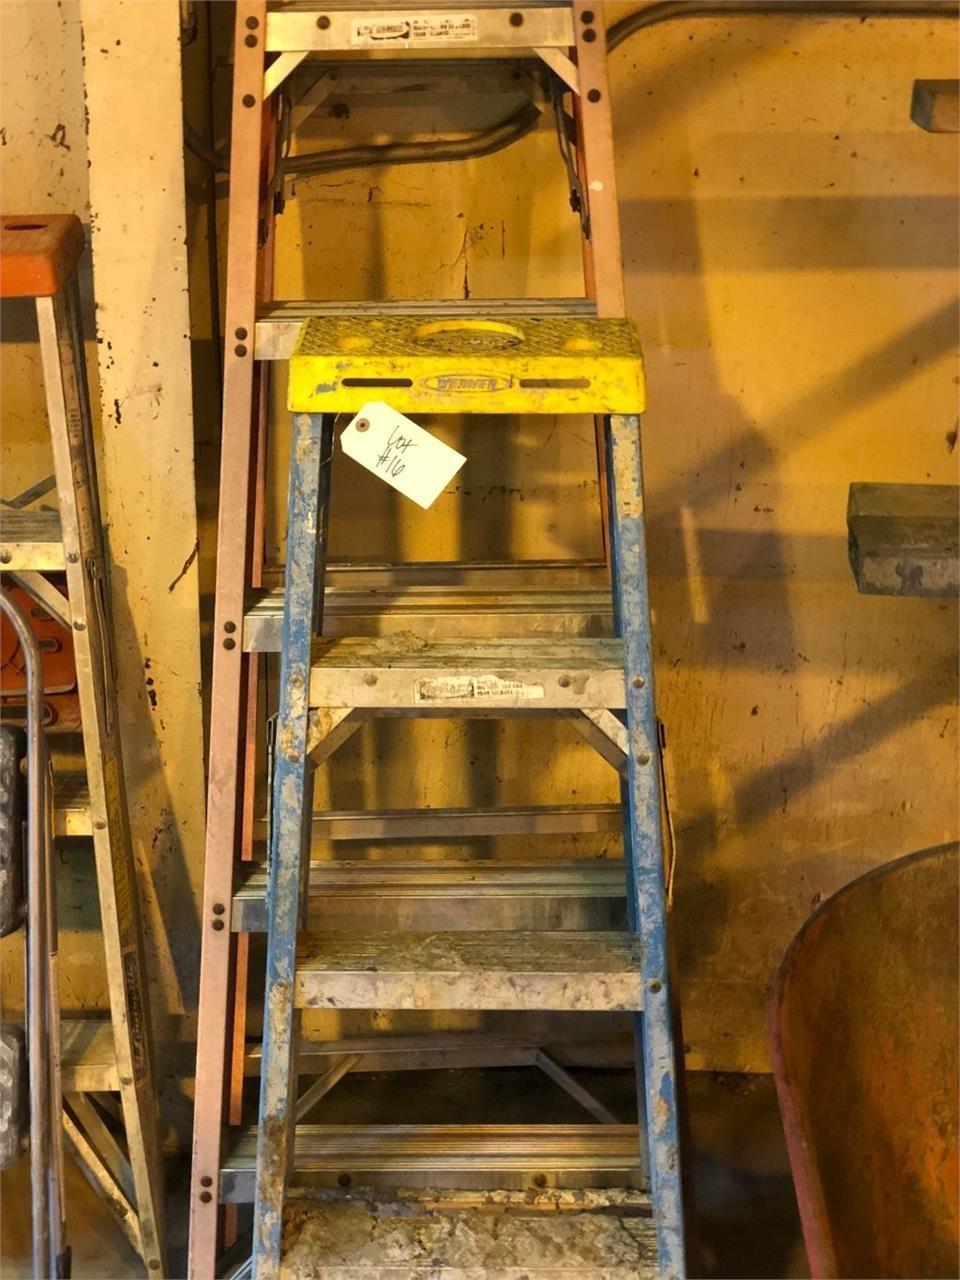 1 - 6ft & 1- 4ft fiber glass ladder